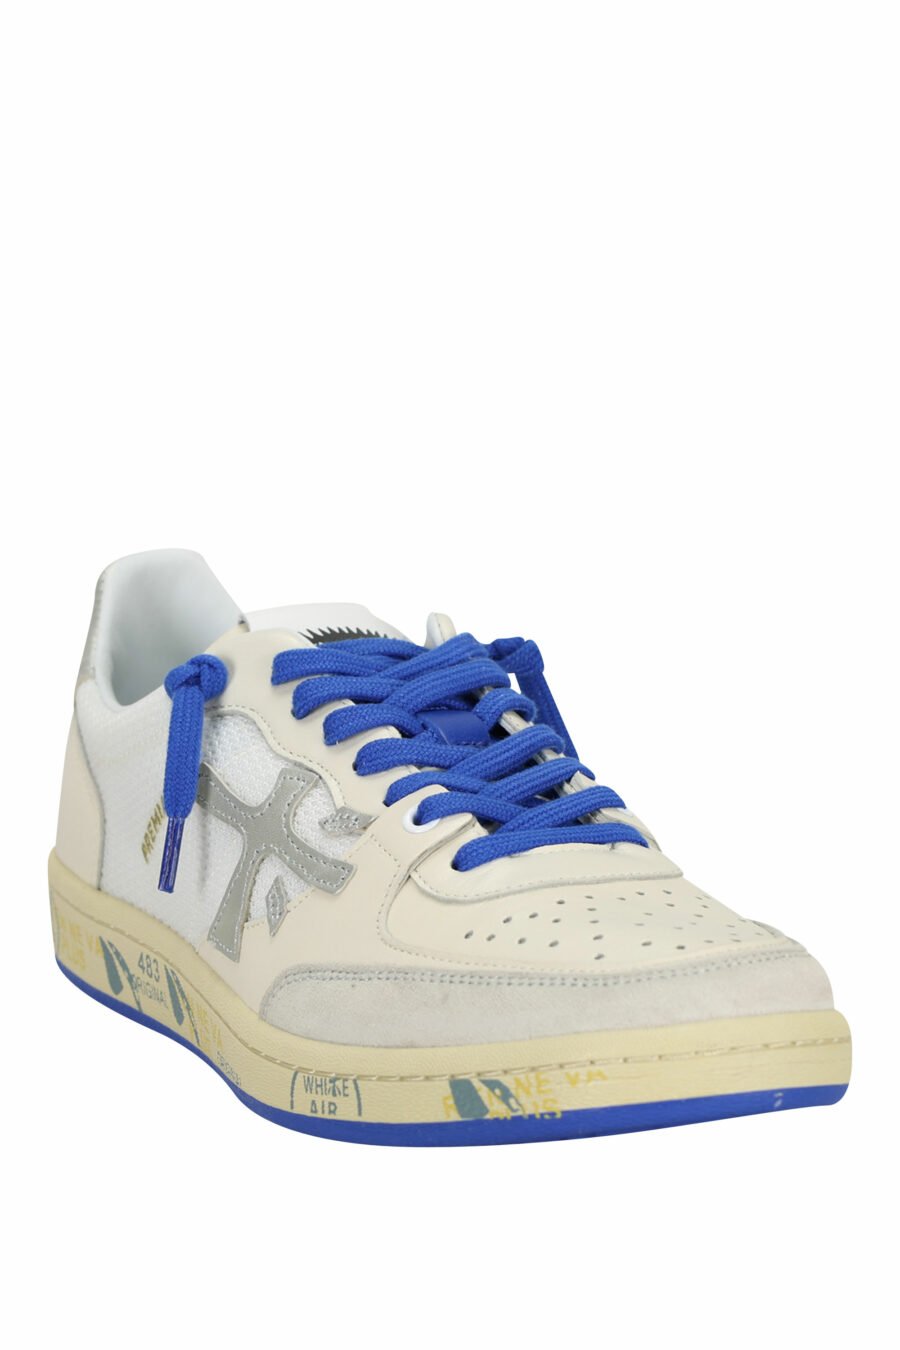 Zapatillas blancas con azul BSKTCLAY 6810 - 8053680315294 1